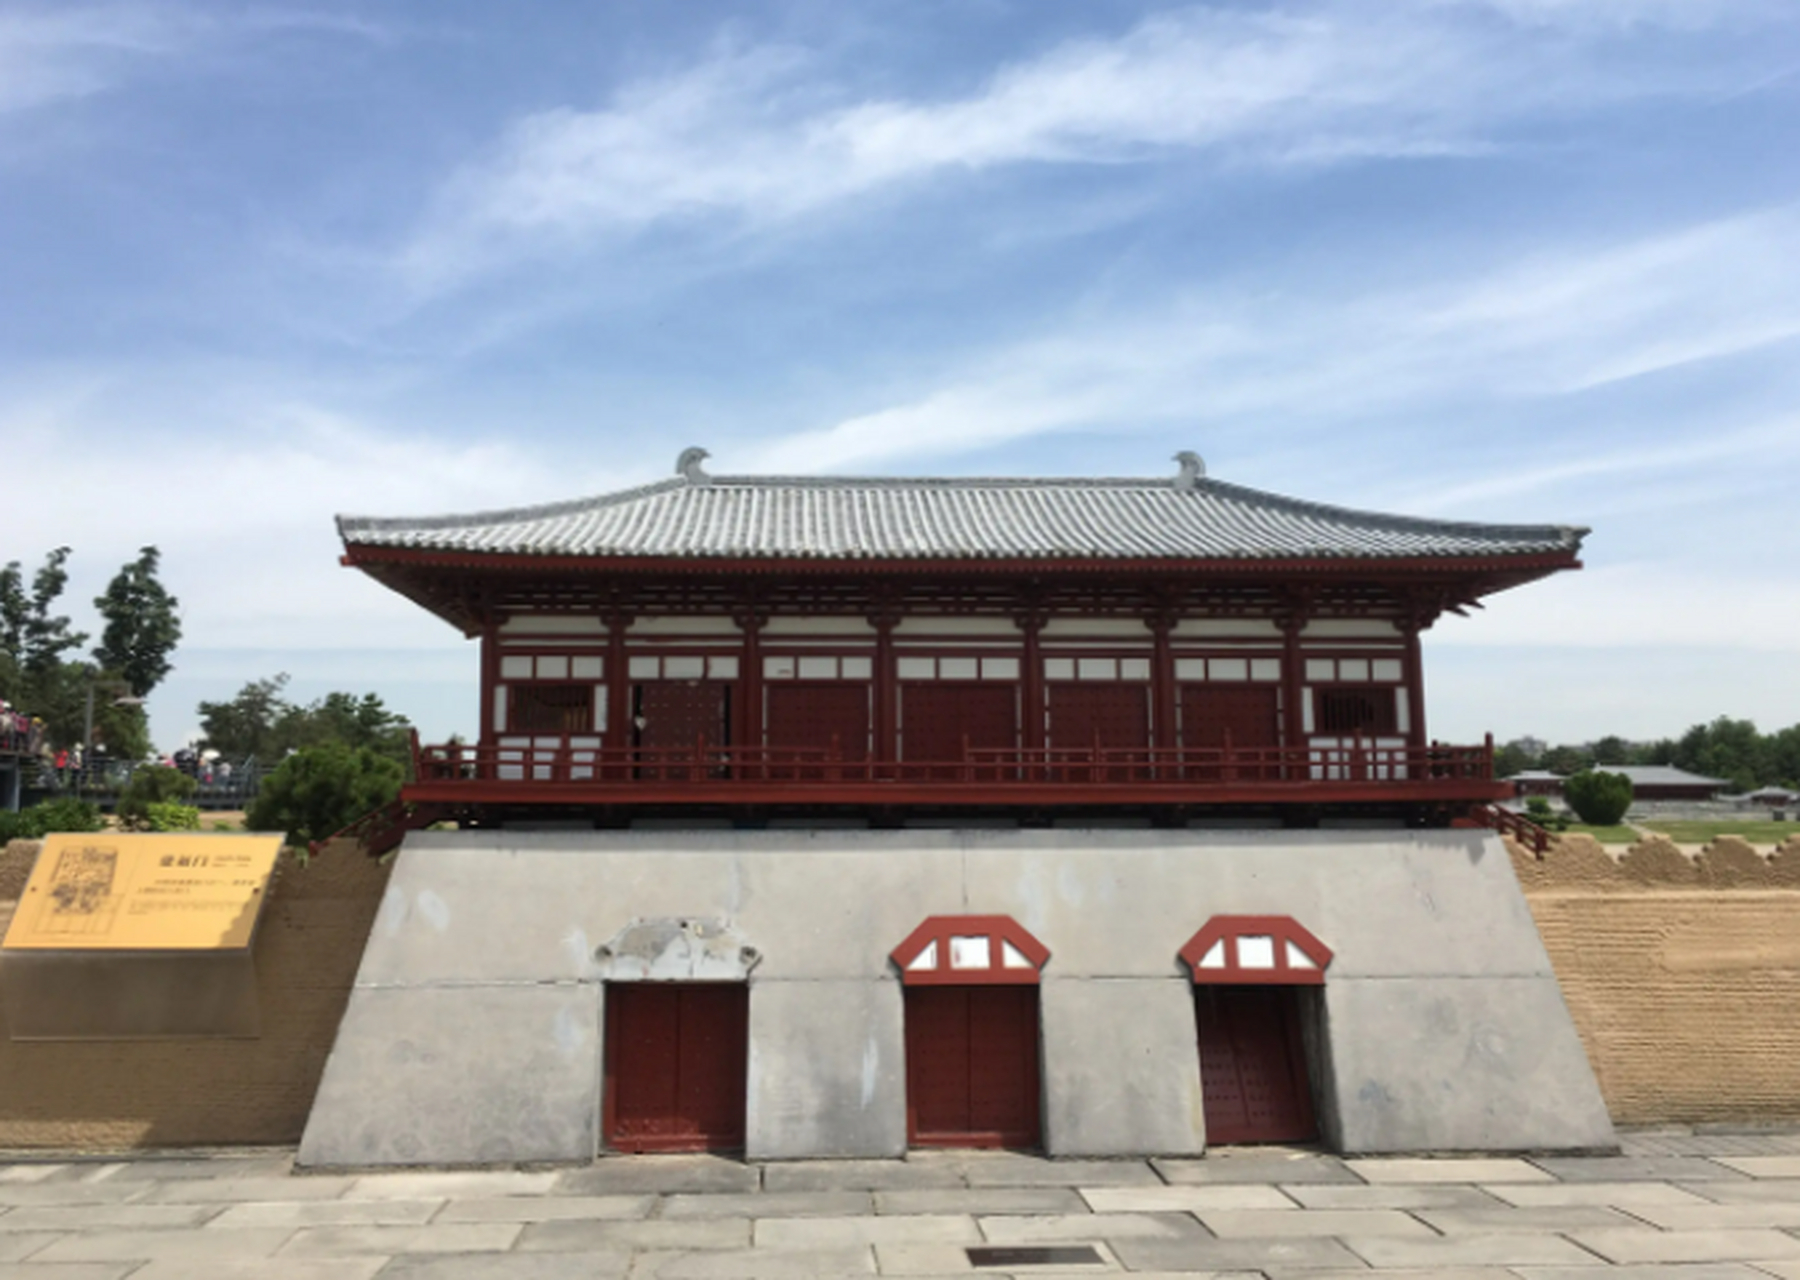 大明宫是唐朝时期的皇家宫殿,位于现今的陕西省西安市